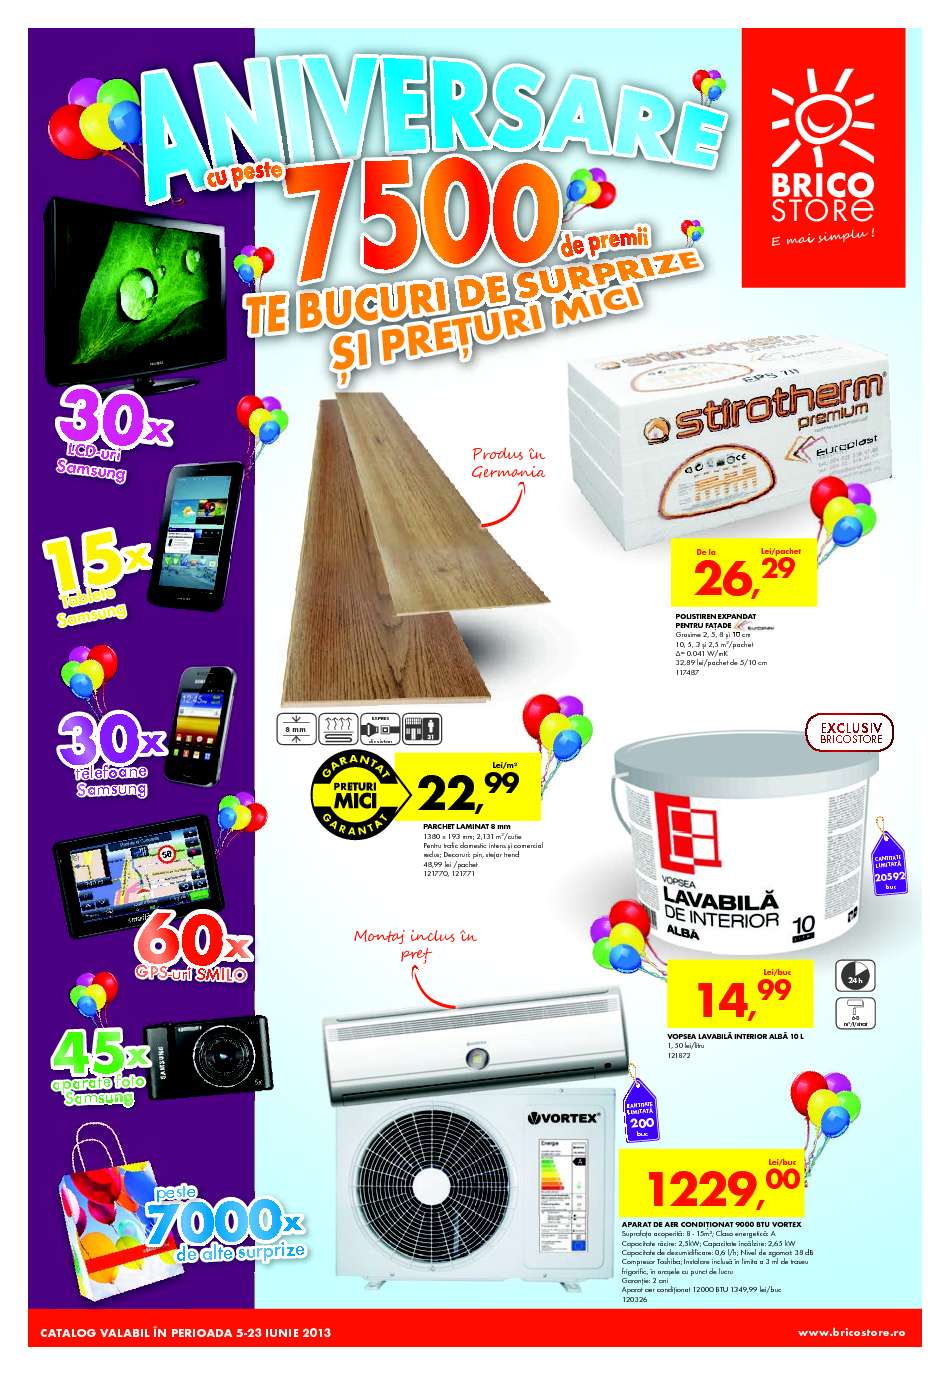 Inquire Feat pasta Catalog oferte si promotii: Catalog Bricostore Suceava iunie 2013